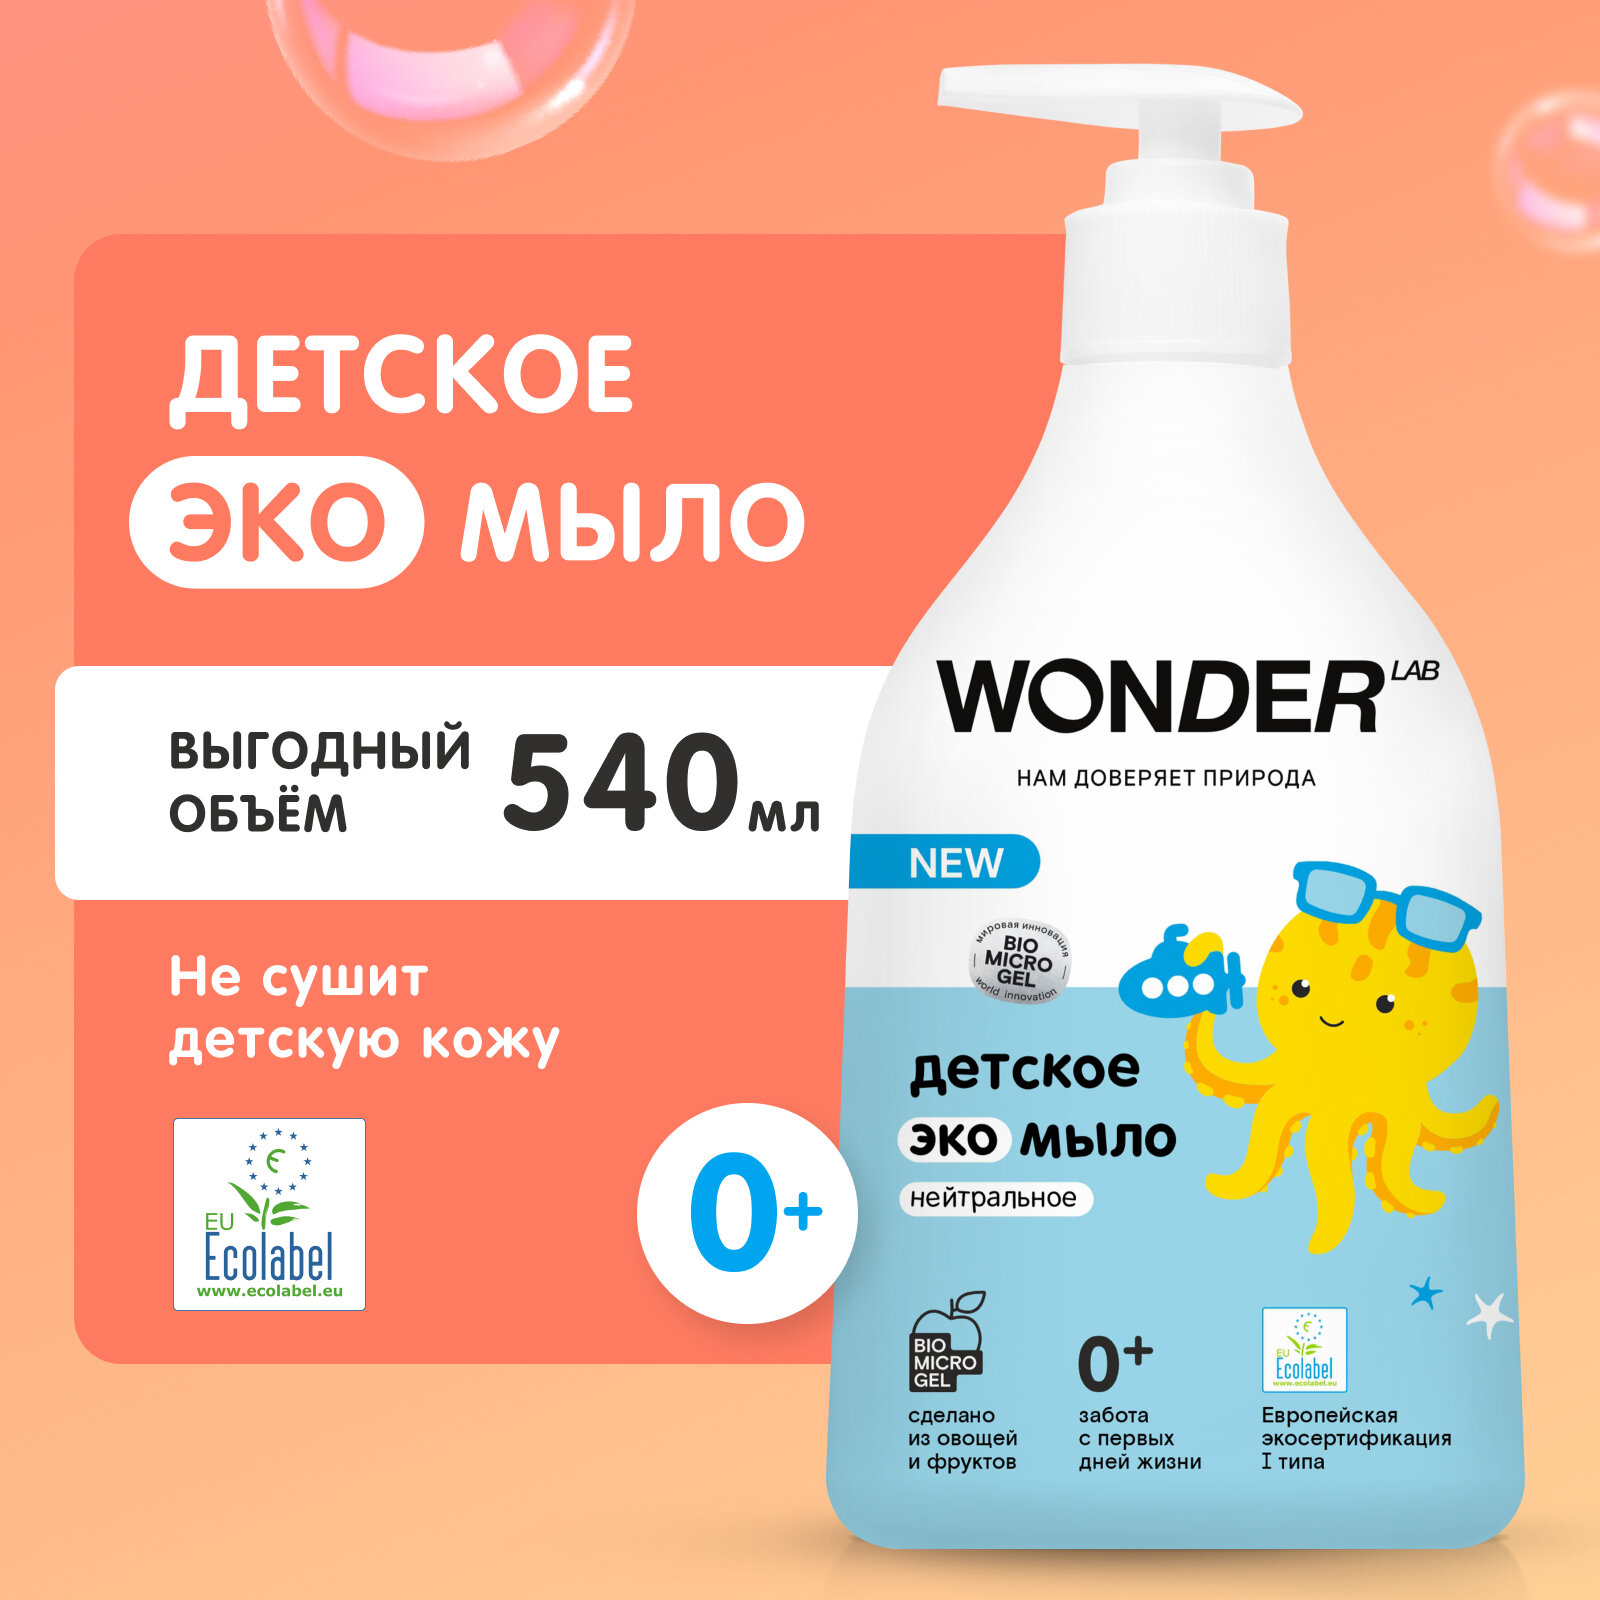 Детское жидкое эко мыло 0+ WONDER LAB, гель для новорожденных без запаха, 540 мл